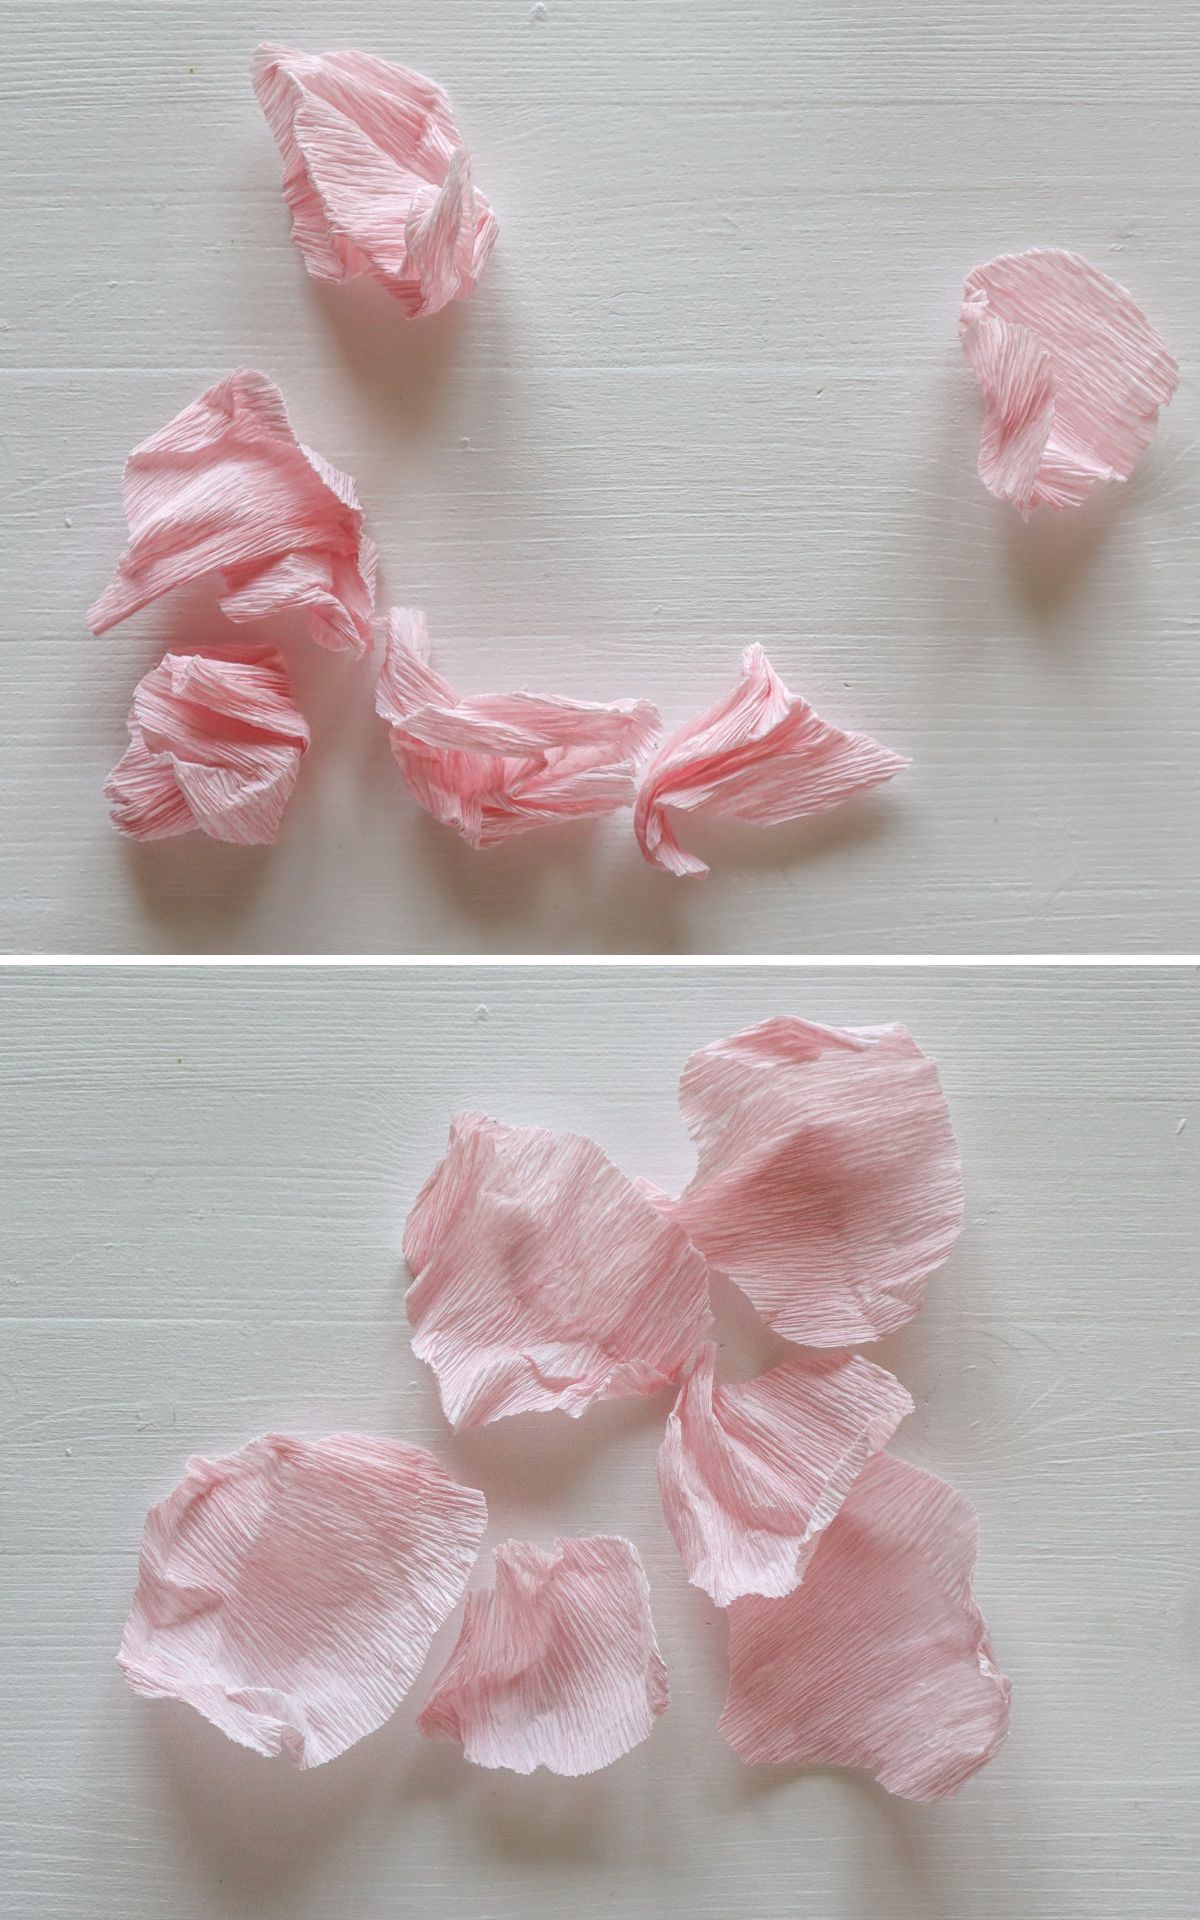 Papierblumen basteln: So kannst du wunderschöne Mohn-Blumen aus Papier ganz leicht selber machen! Hier findest du meine DIY Anleitung für Papierblumen aus Krepp (bekannt aus dem ARD Buffet) inkl. Vorlagen.